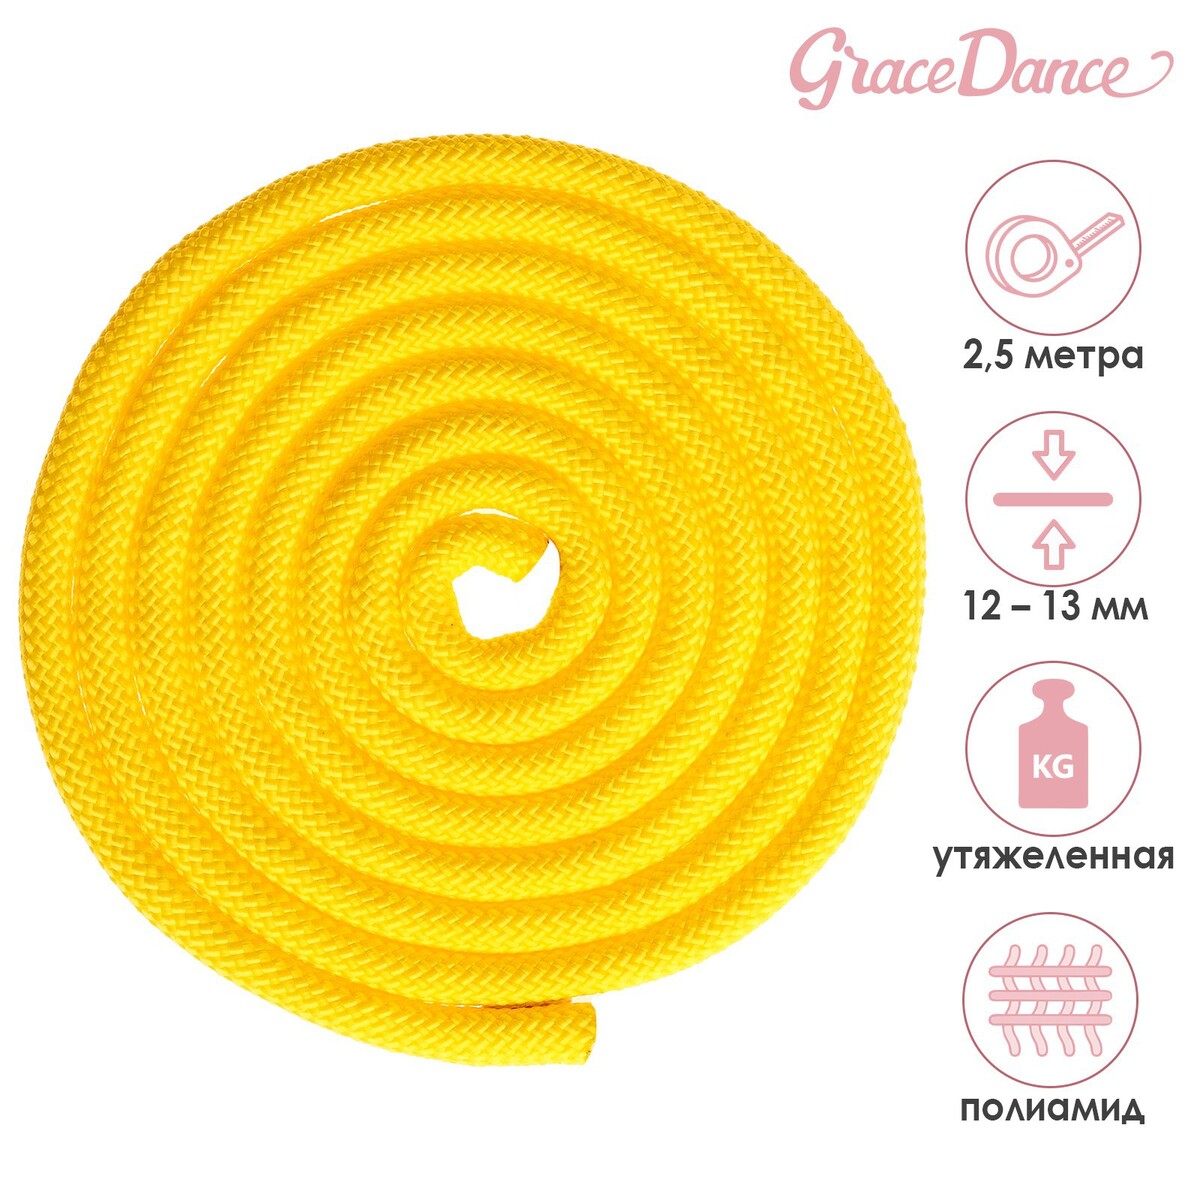 Скакалка для художественной гимнастики утяжеленная grace dance, 2,5 м, цвет желтый скакалка для художественной гимнастики утяжеленная grace dance 2 5 м желтый